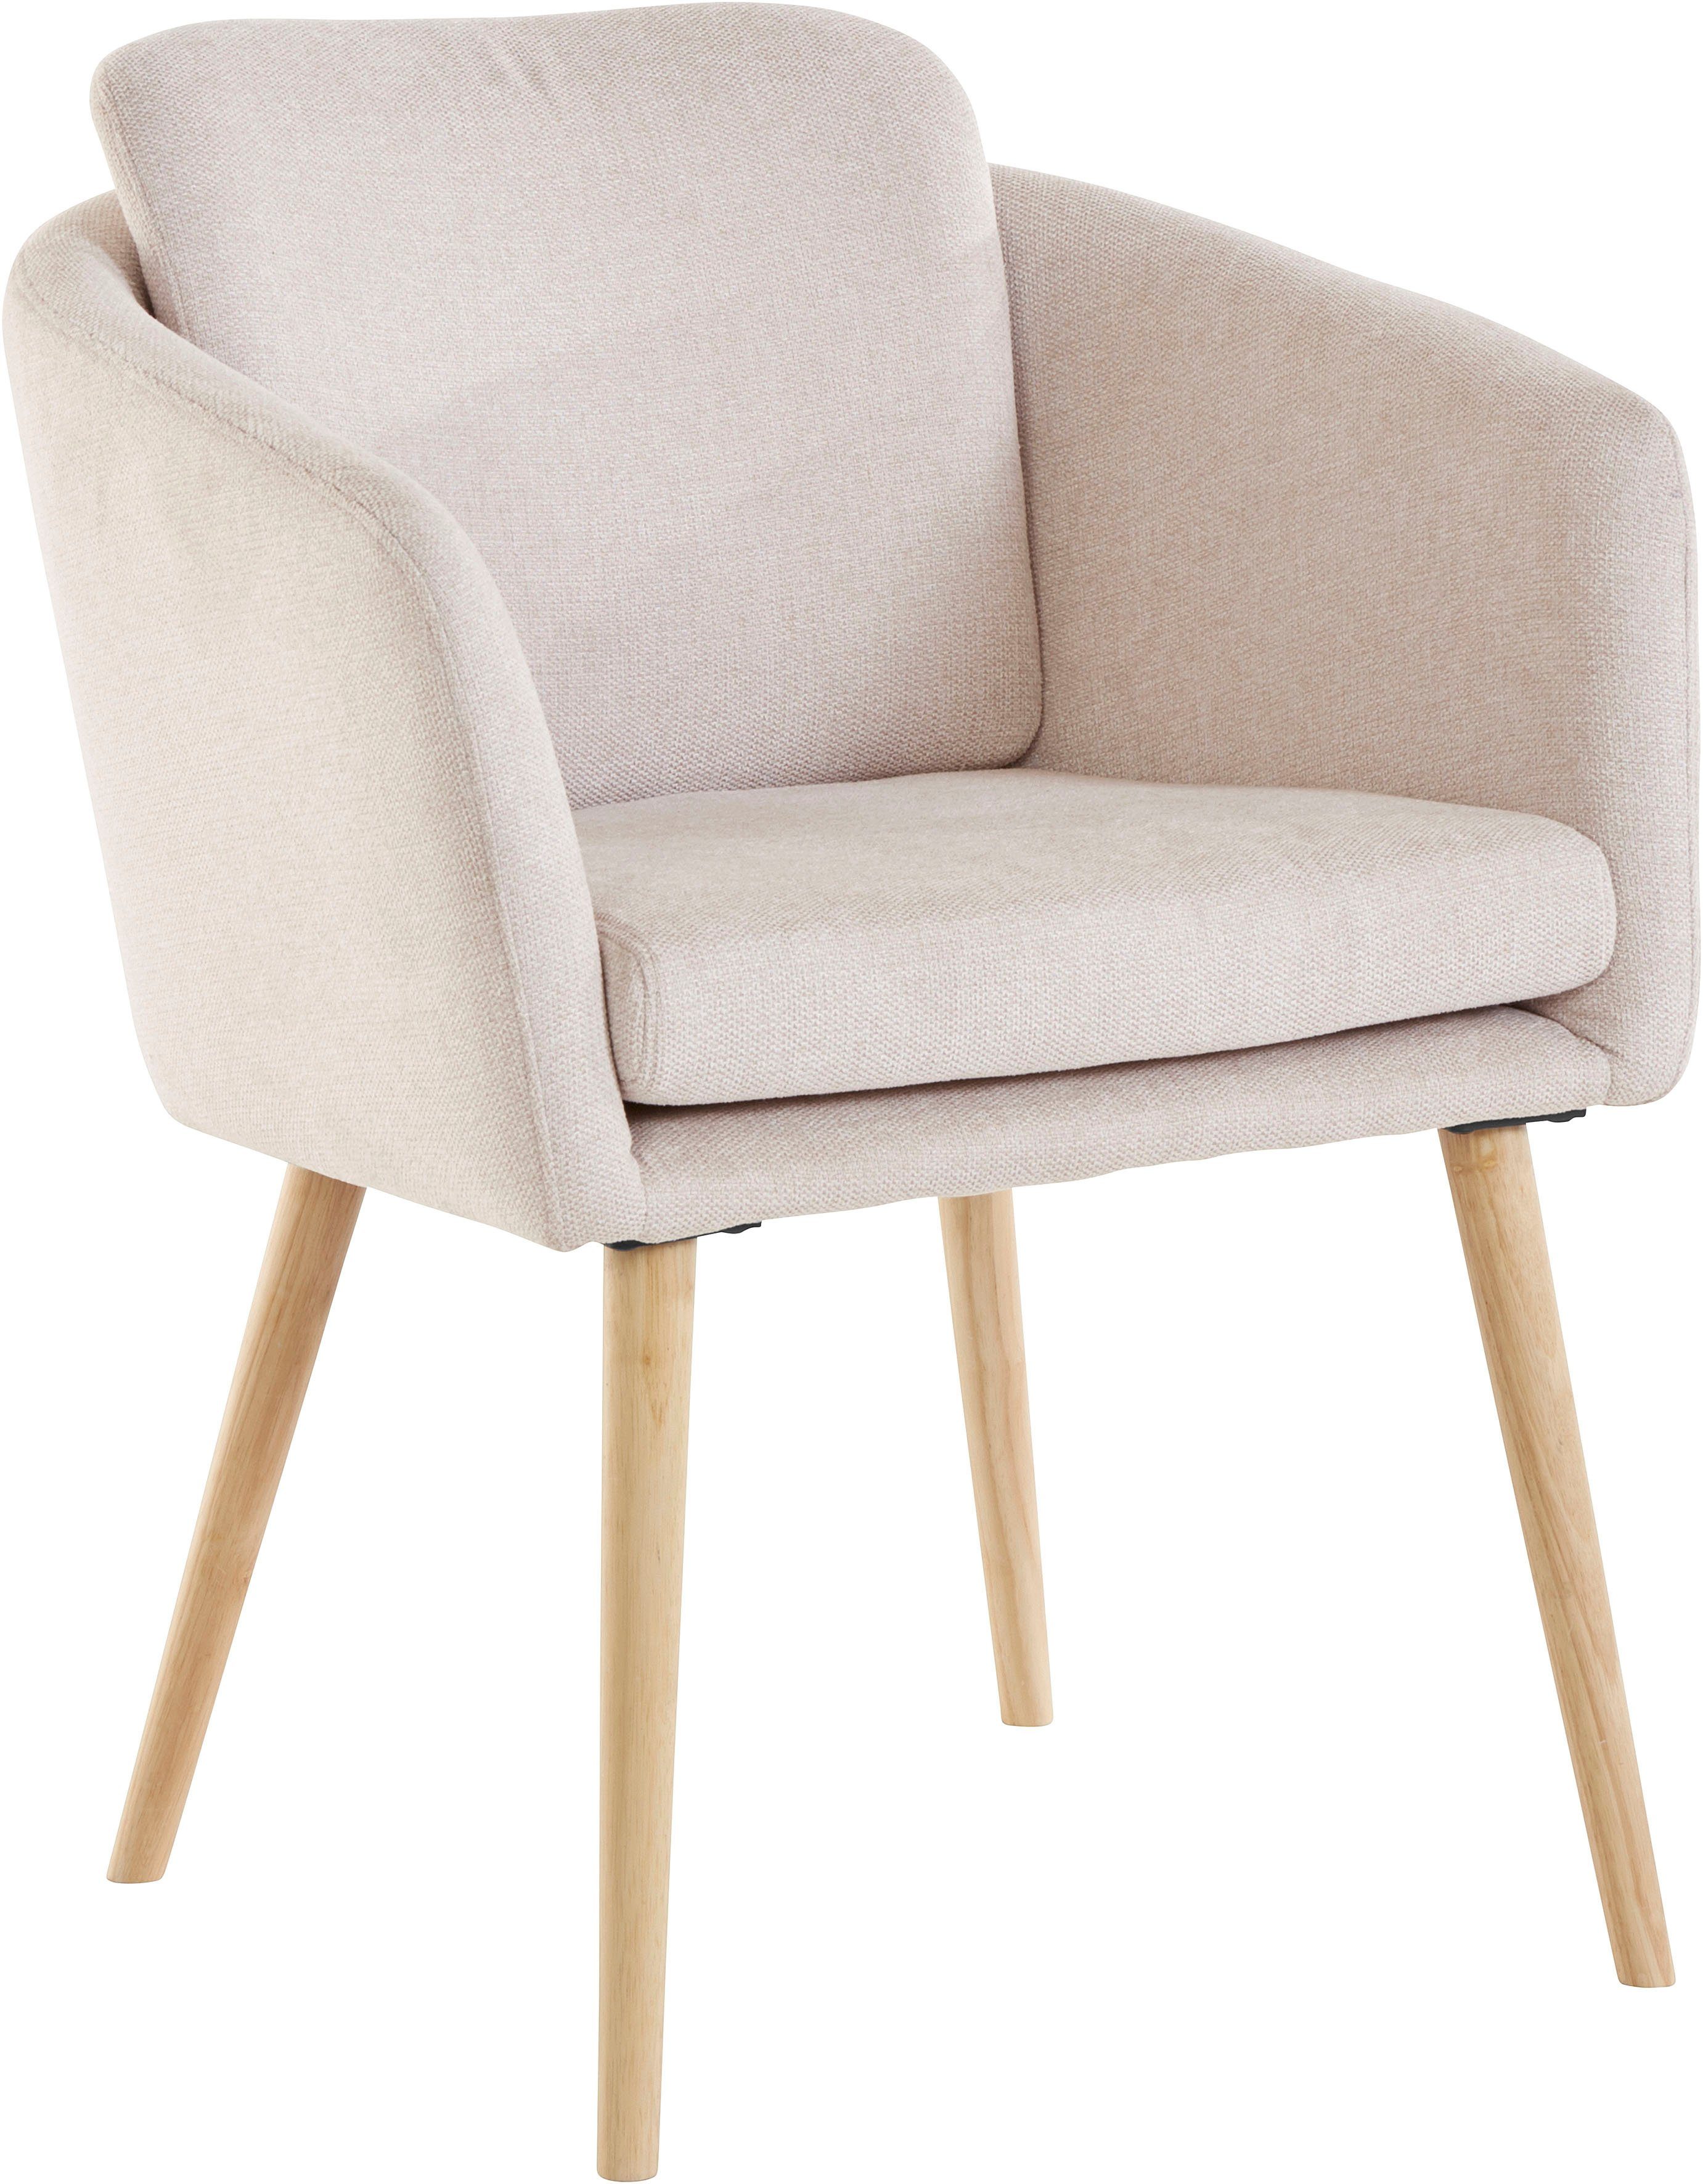 LeGer Home Stühle online kaufen » LeGer Stühle | OTTO